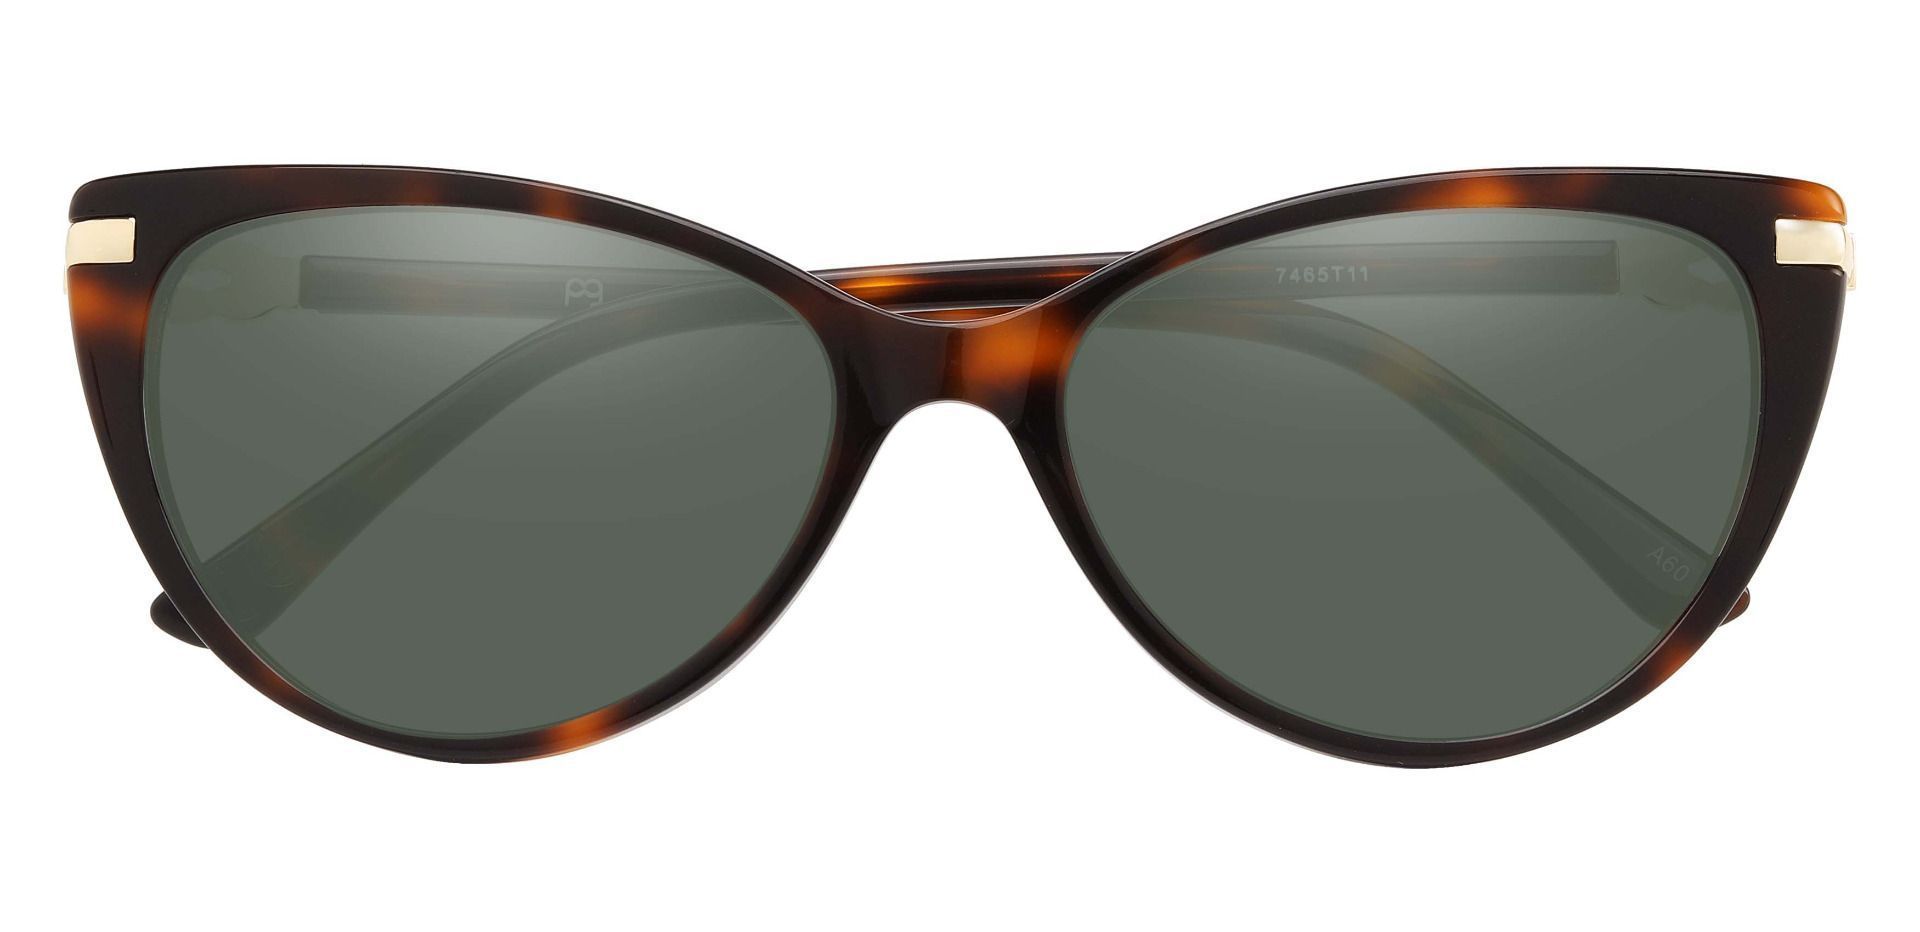 Starla Cat Eye Progressive Sunglasses - Tortoise Frame With Green Lenses